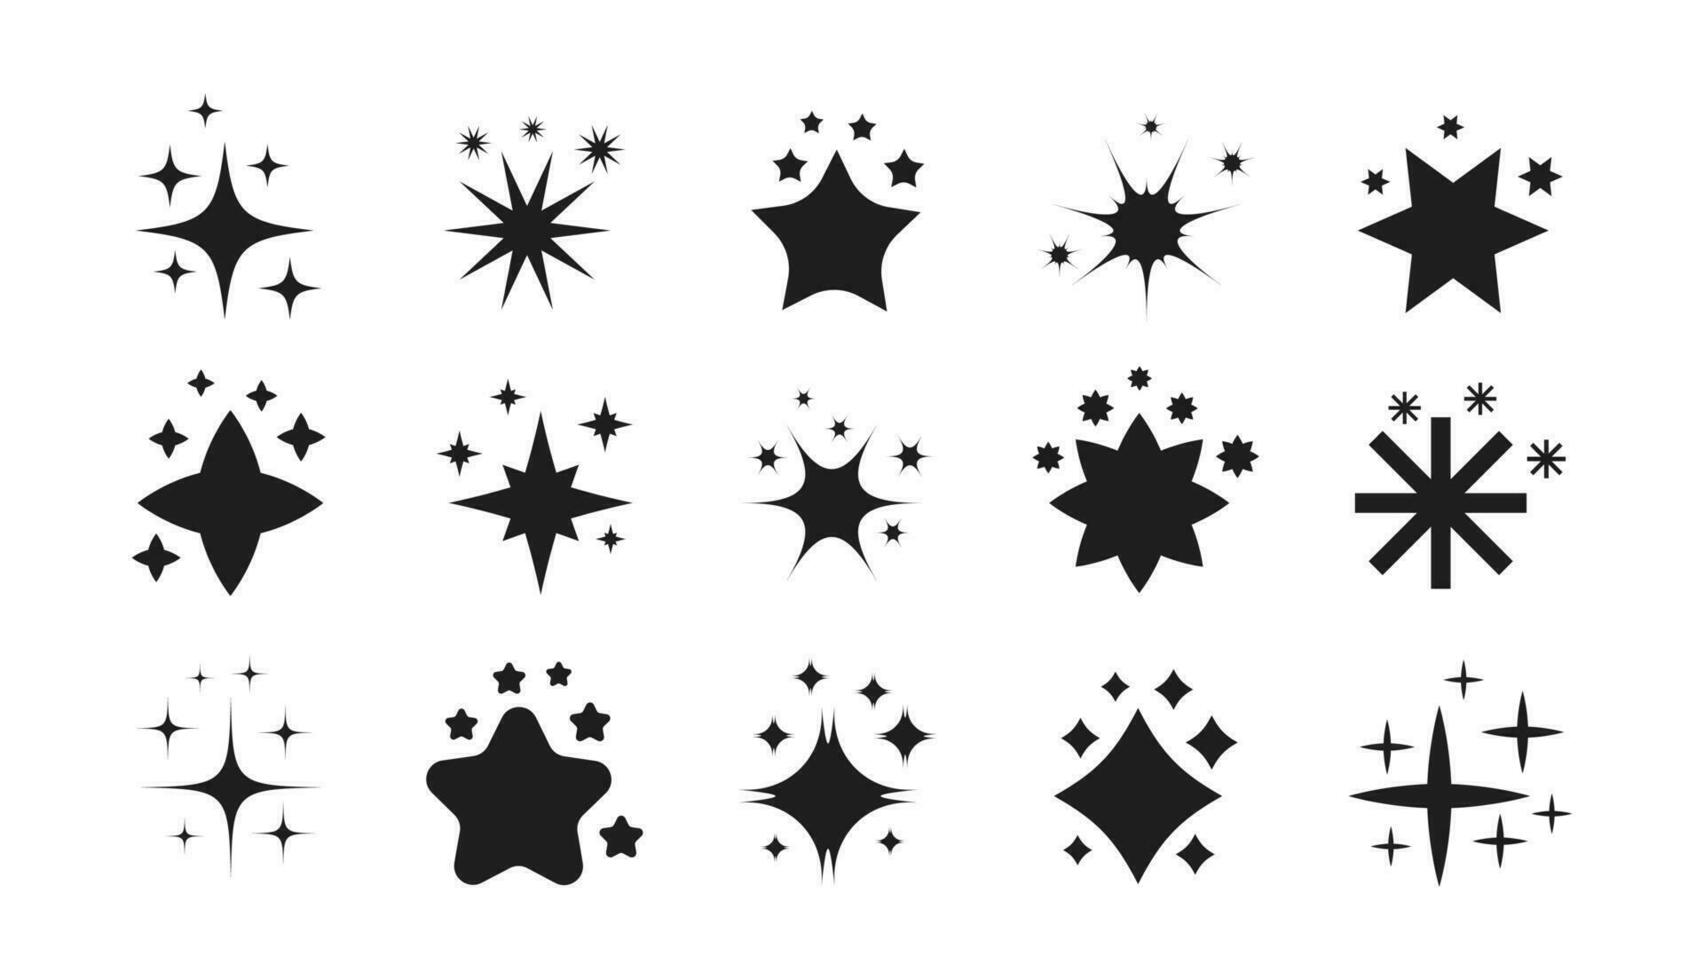 reeks van ster vormen. twinkelen ster vormen vector ontwerp. koel fonkeling pictogrammen verzameling. reeks van ster elementen van divers vormen.